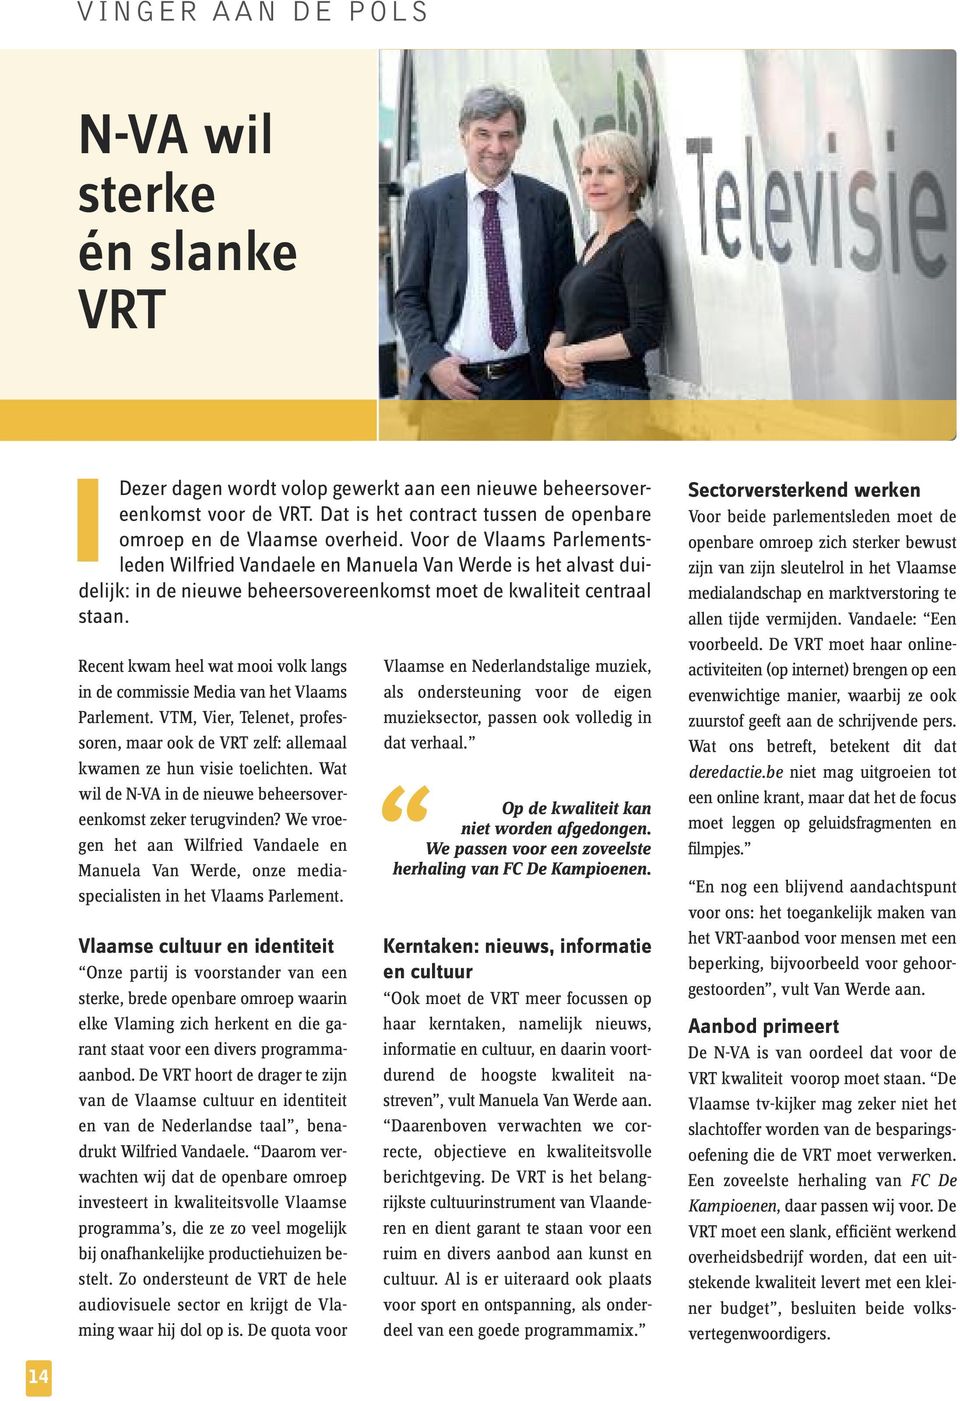 Voor de Vlaams Parlements - leden Wilfried Vandaele en Manuela Van Werde is het alvast duidelijk: in de nieuwe beheersovereenkomst moet de kwaliteit centraal staan.